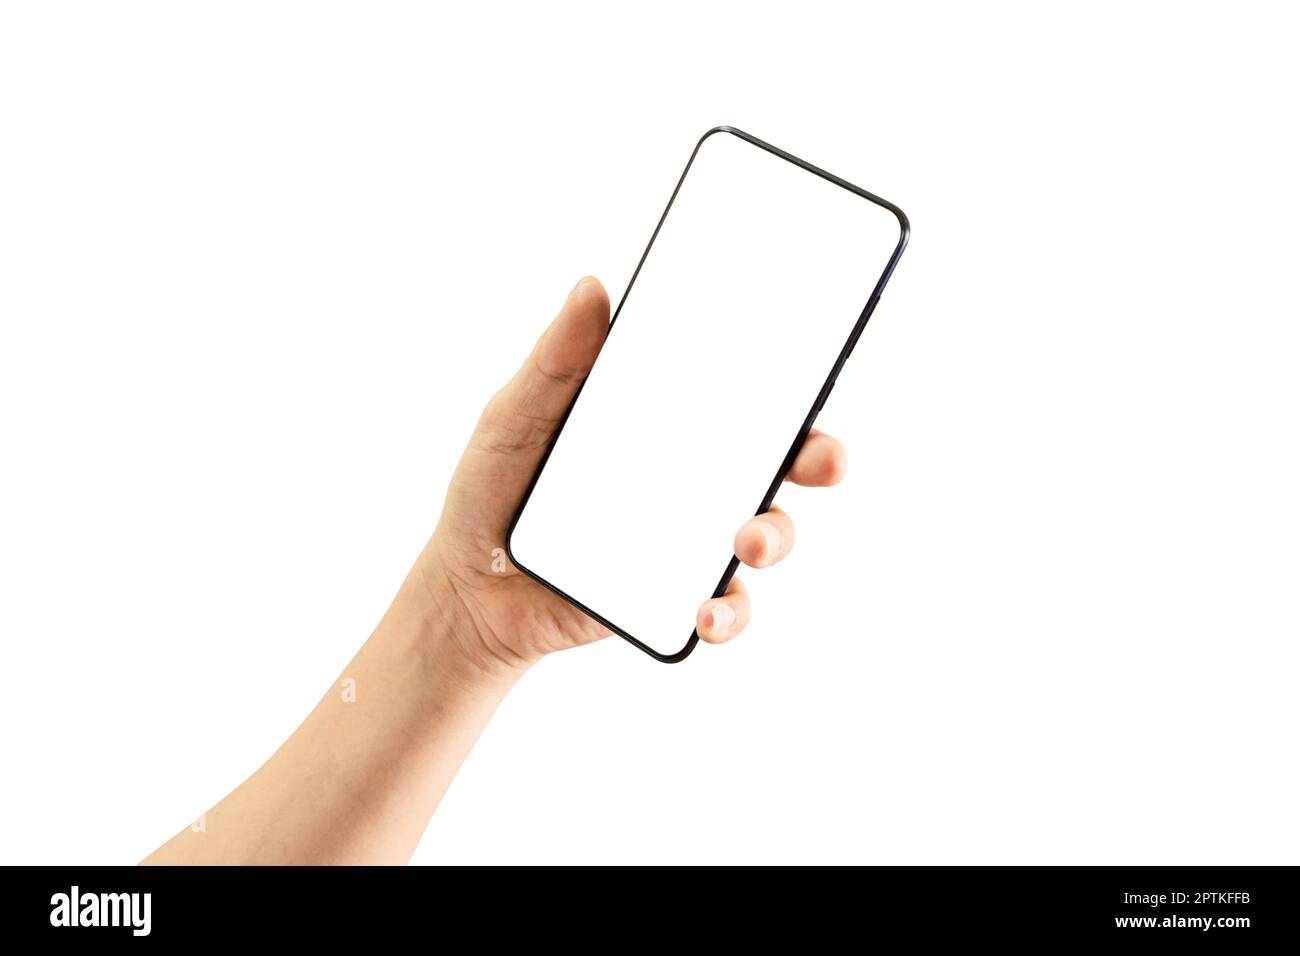 Man Hand Holding smartphone nero con schermo vuoto isolato su sfondo bianco, incluso Clipping Path. Foto Stock